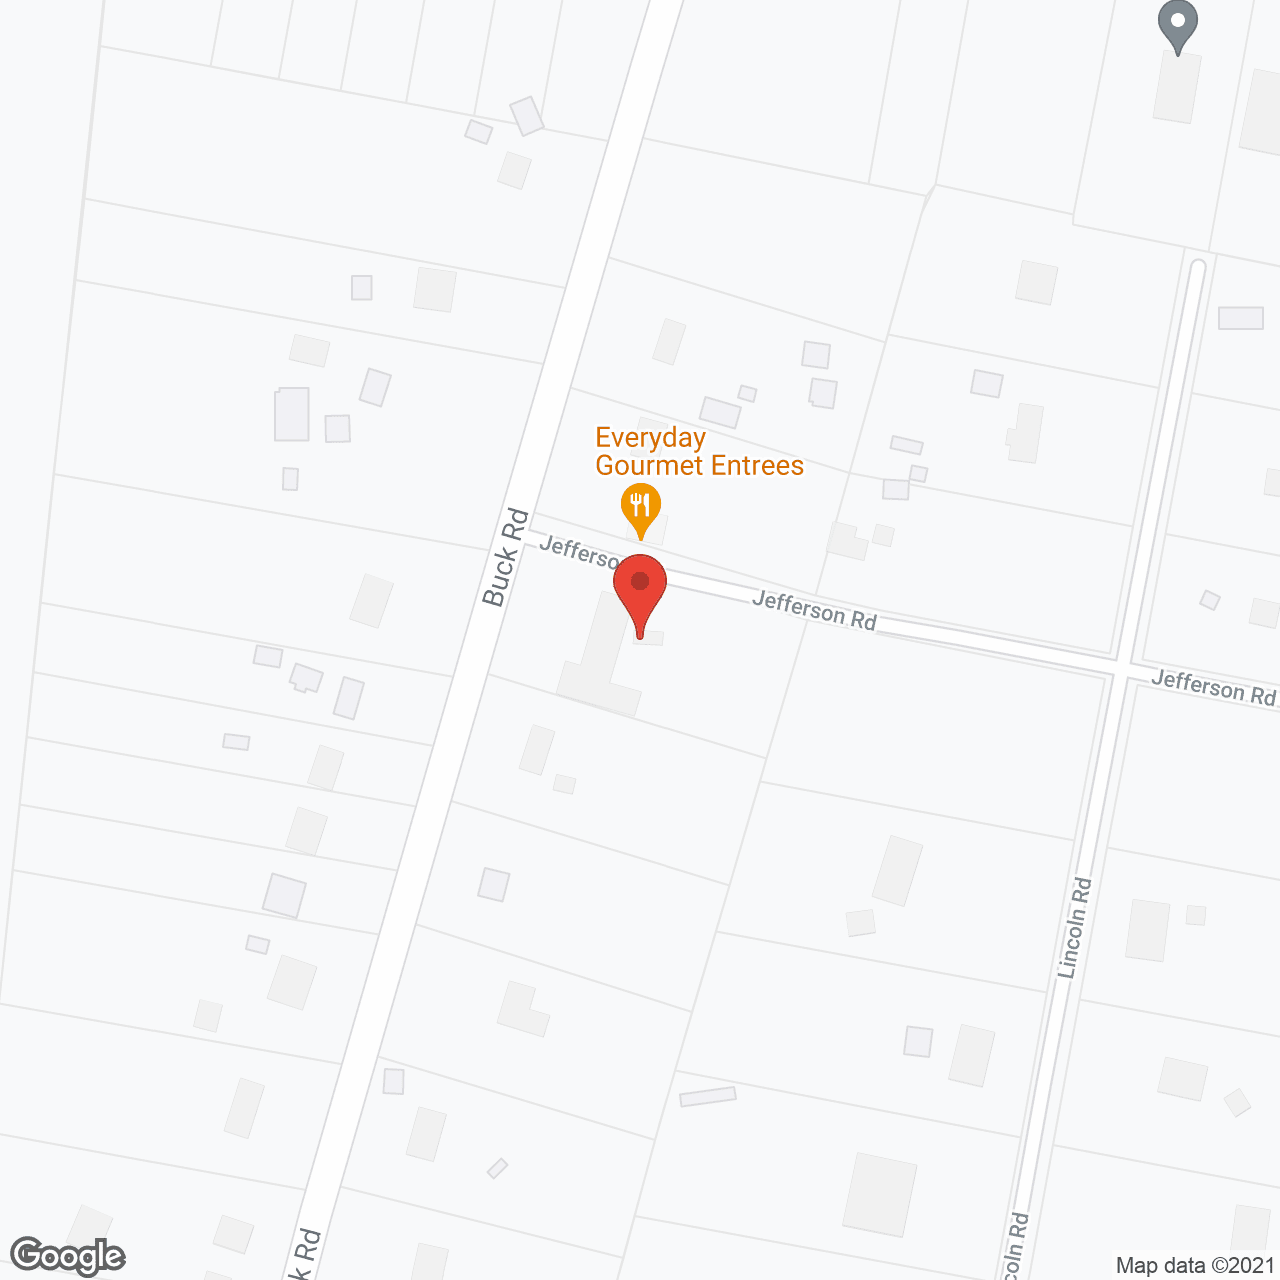 Rosario Haus in google map